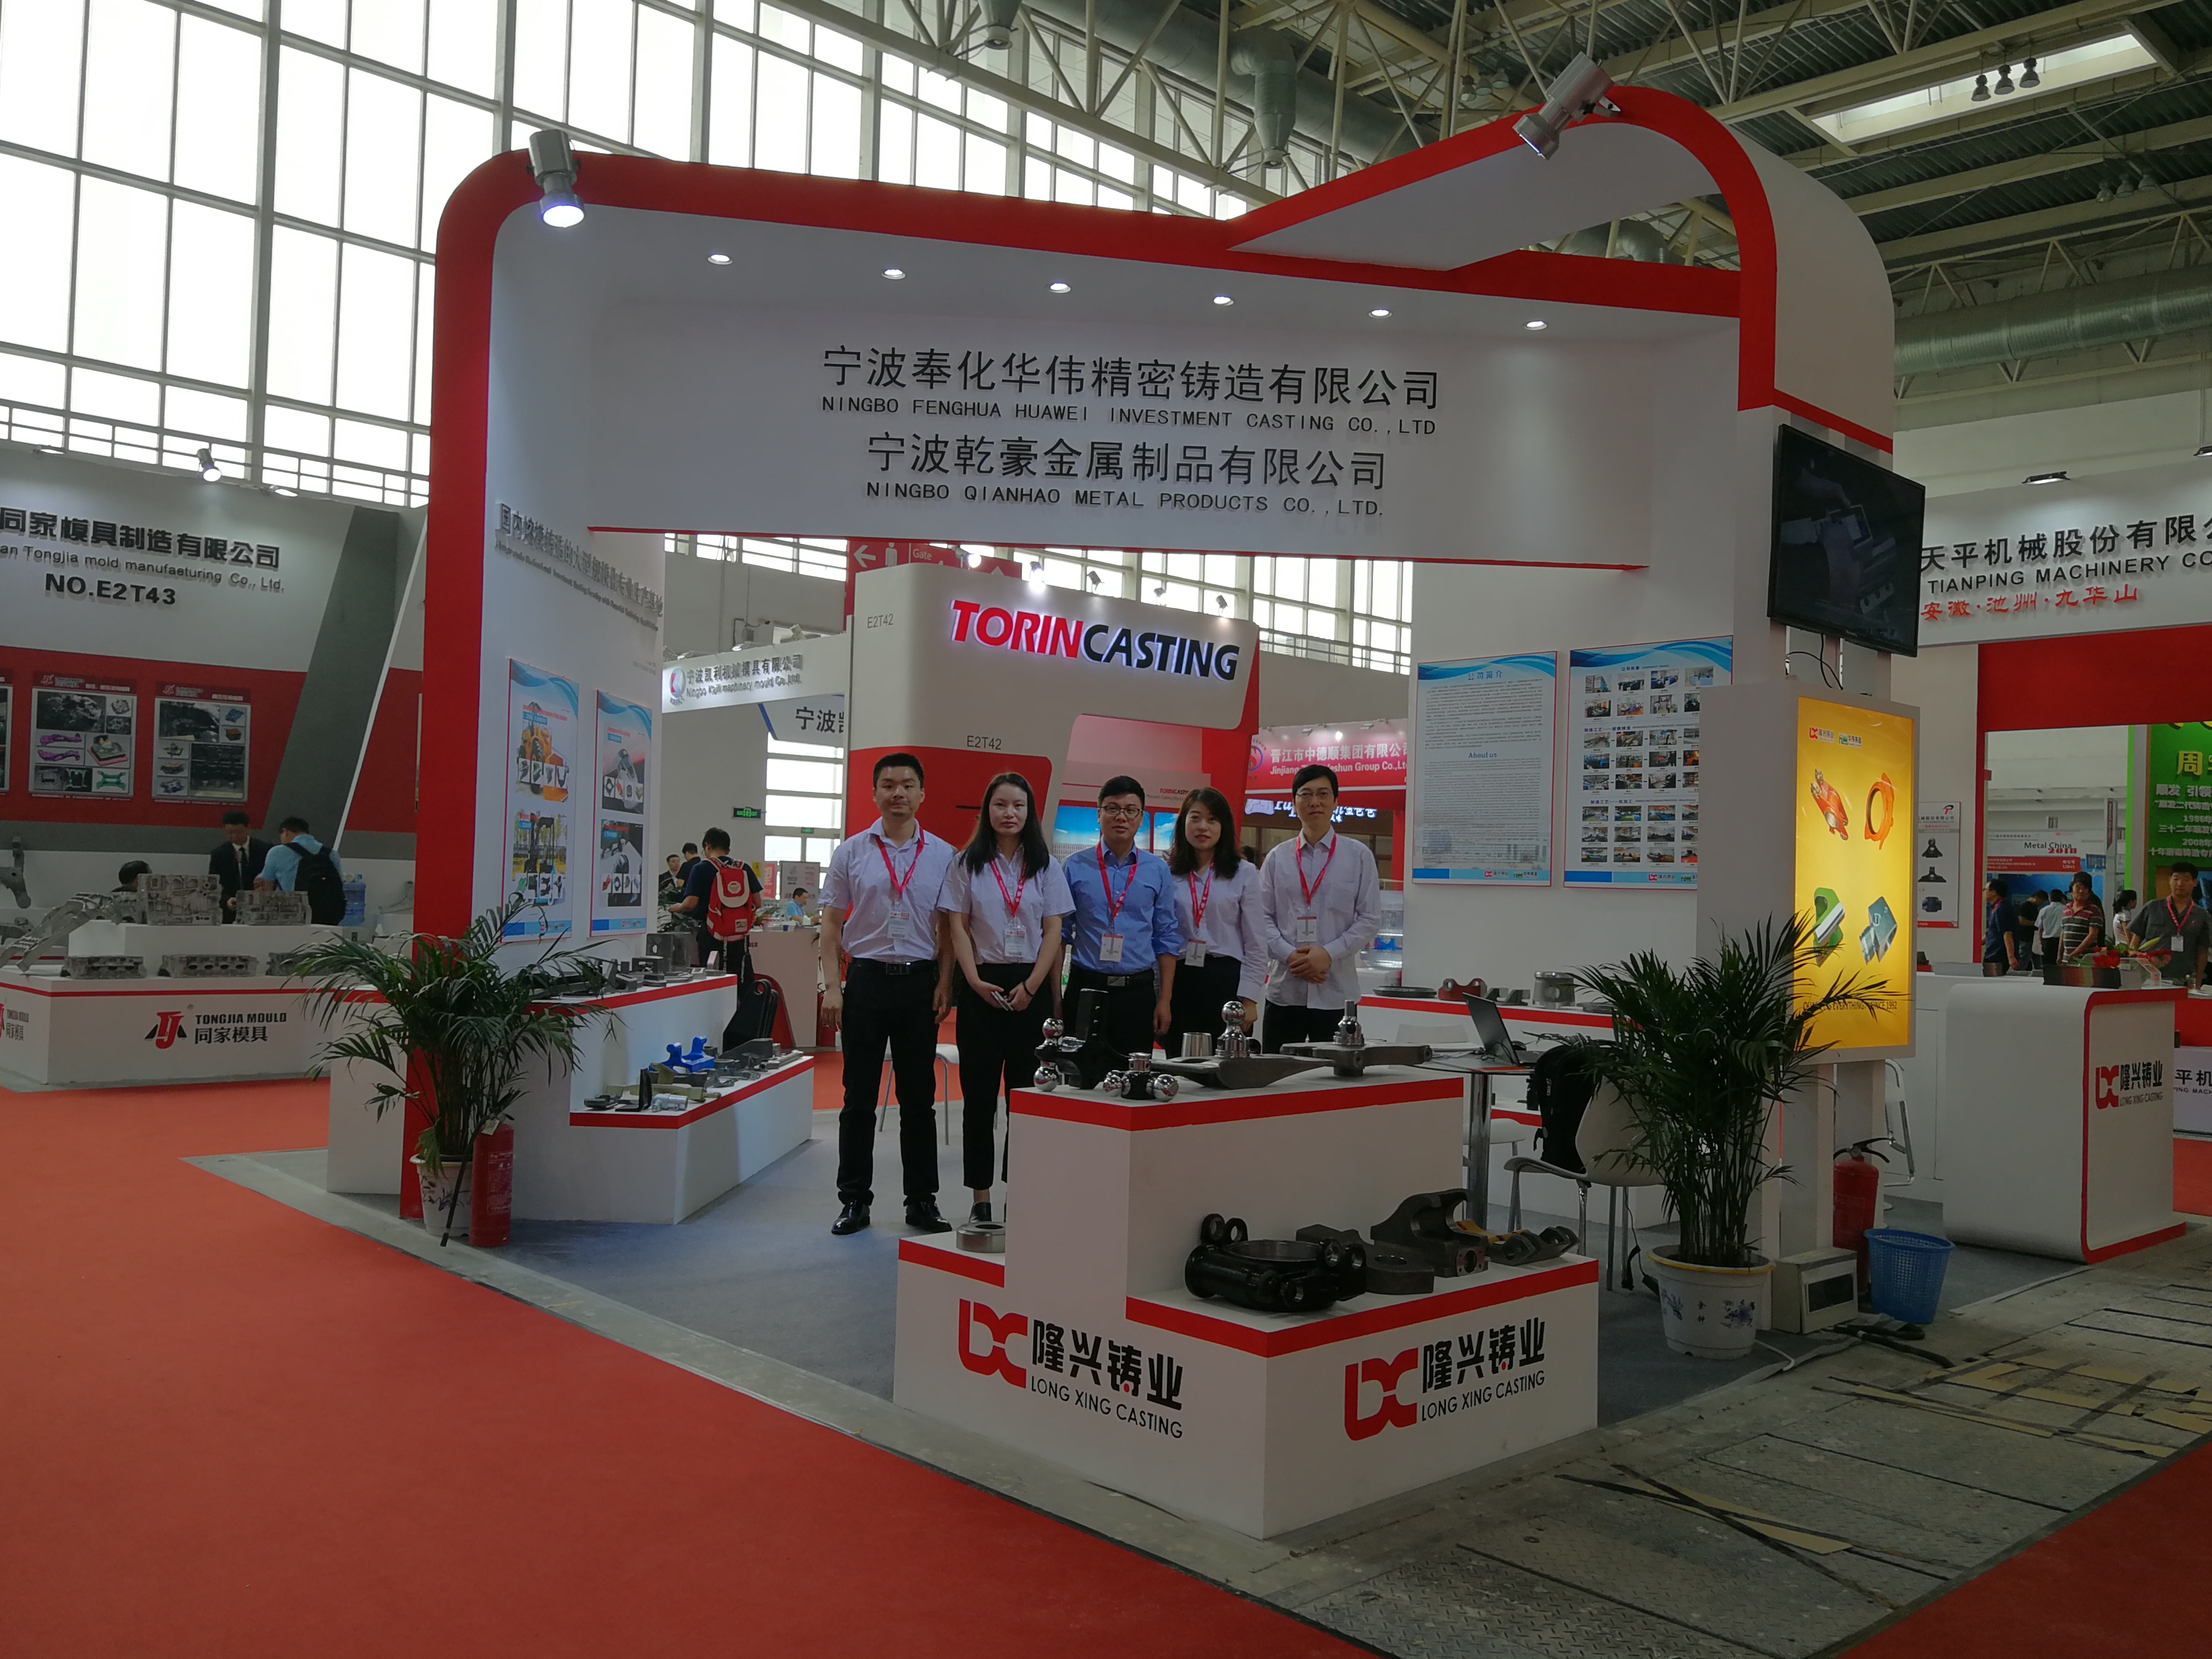  2018第16回中国国際鋳造博覧会です